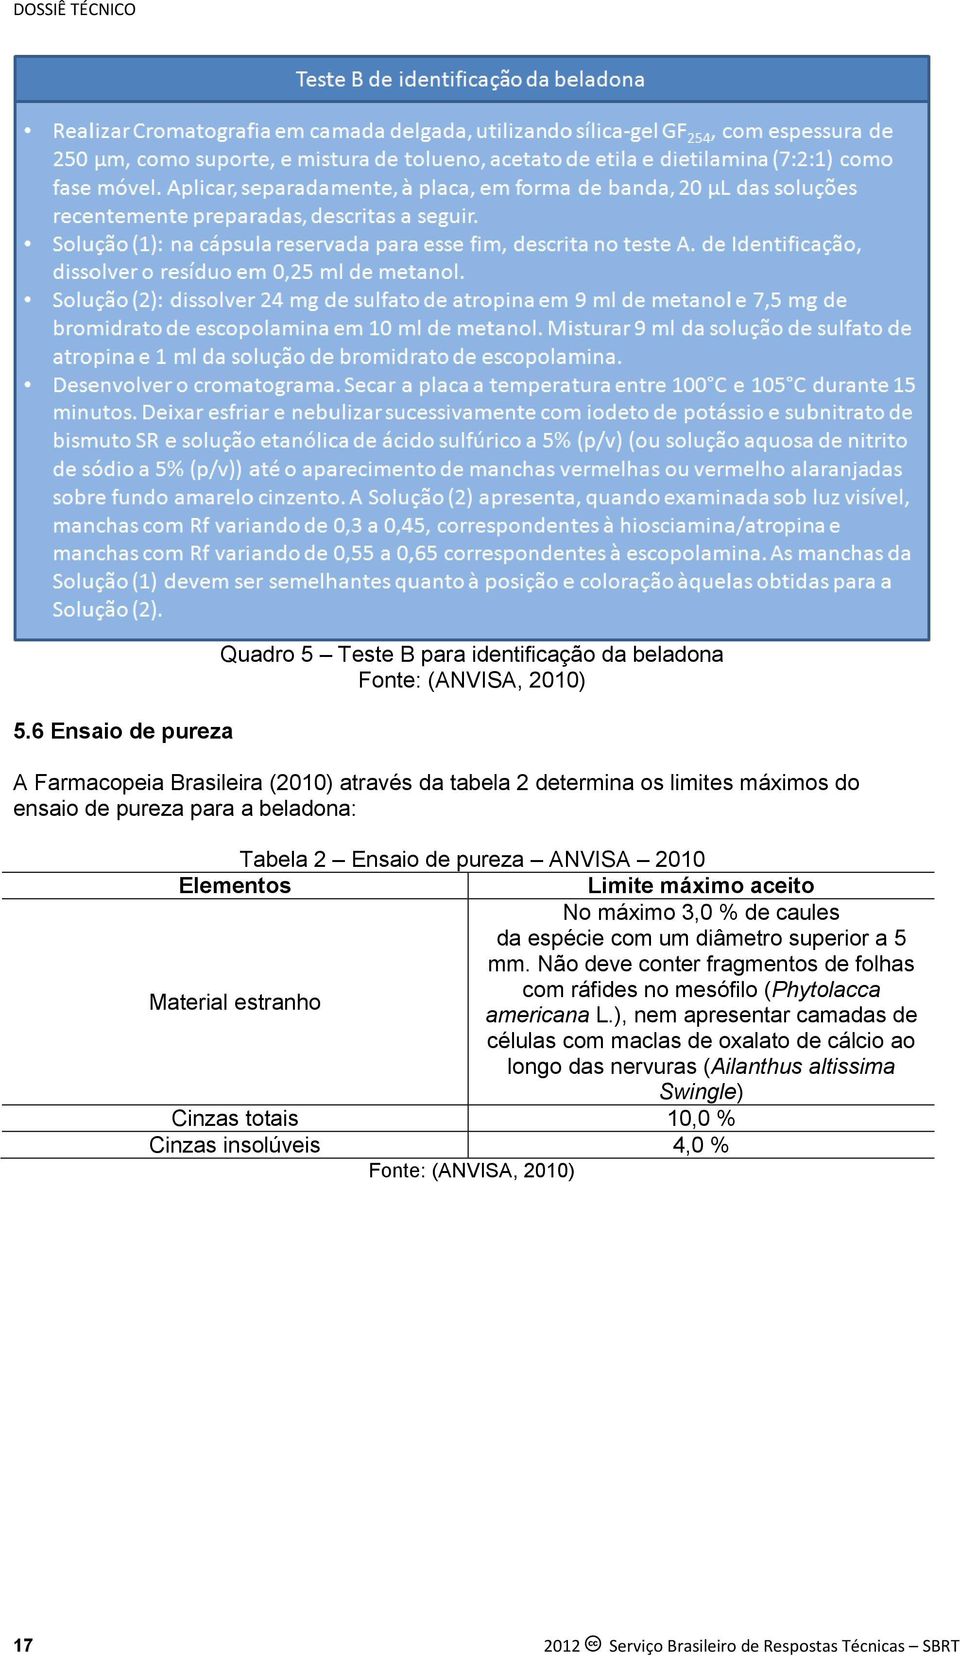 ensaio de pureza para a beladona: Tabela 2 Ensaio de pureza ANVISA 2010 Elementos Limite máximo aceito No máximo 3,0 % de caules da espécie com um diâmetro superior a 5 mm.